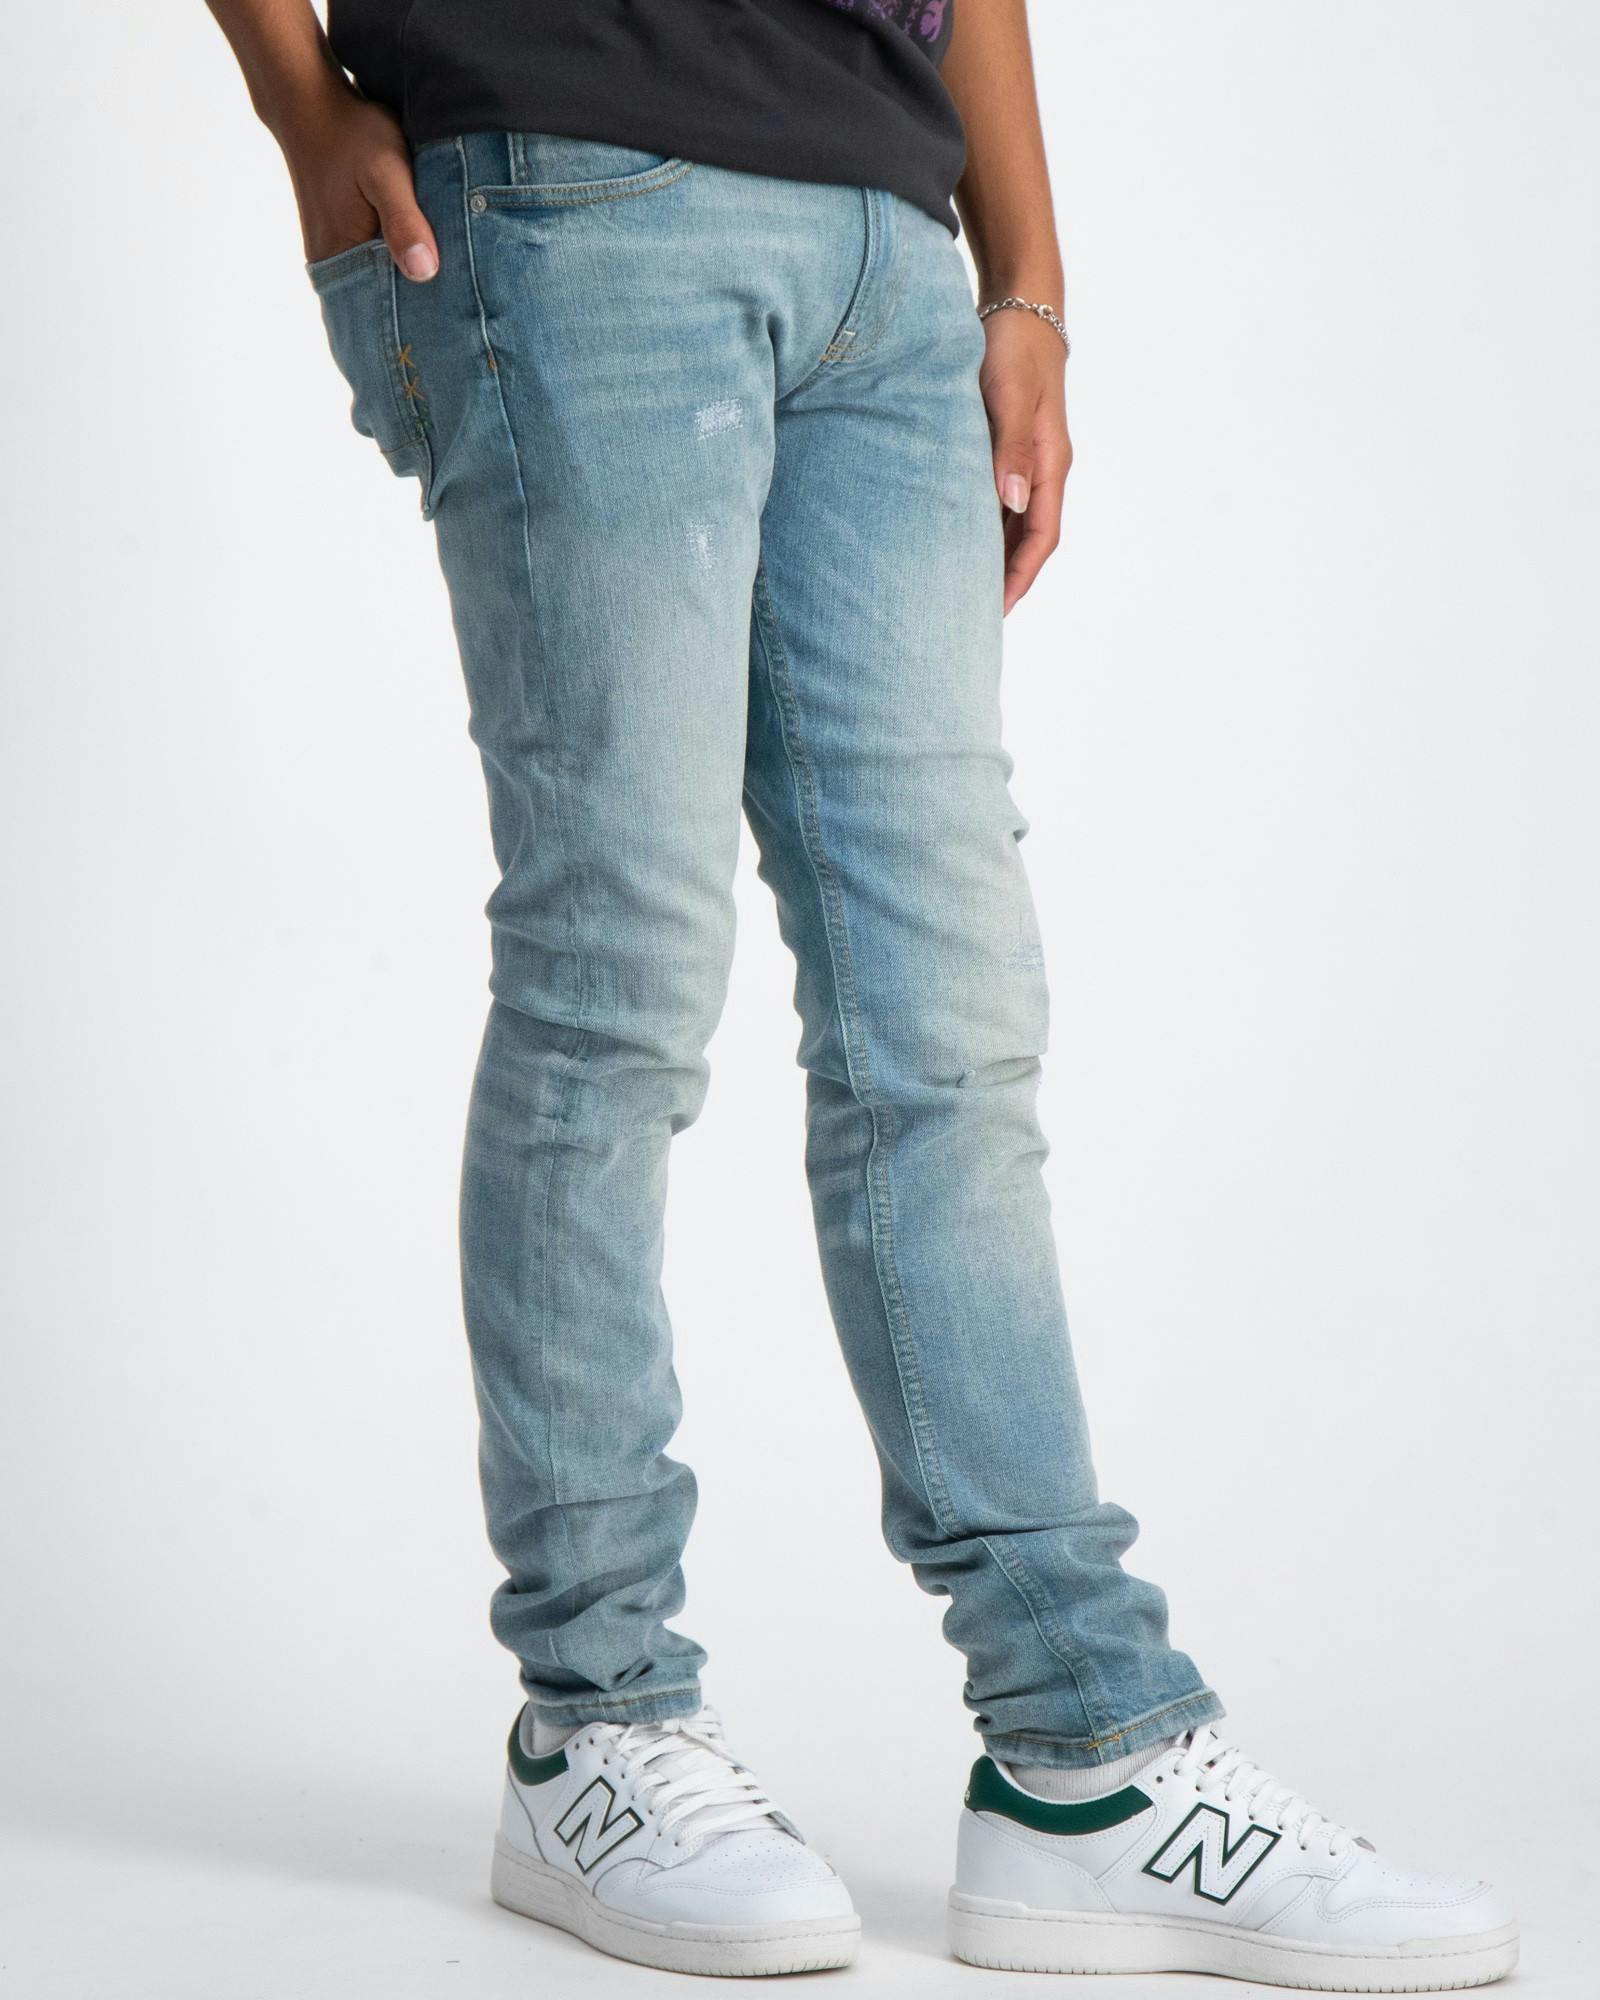 Tigger skinny jeans